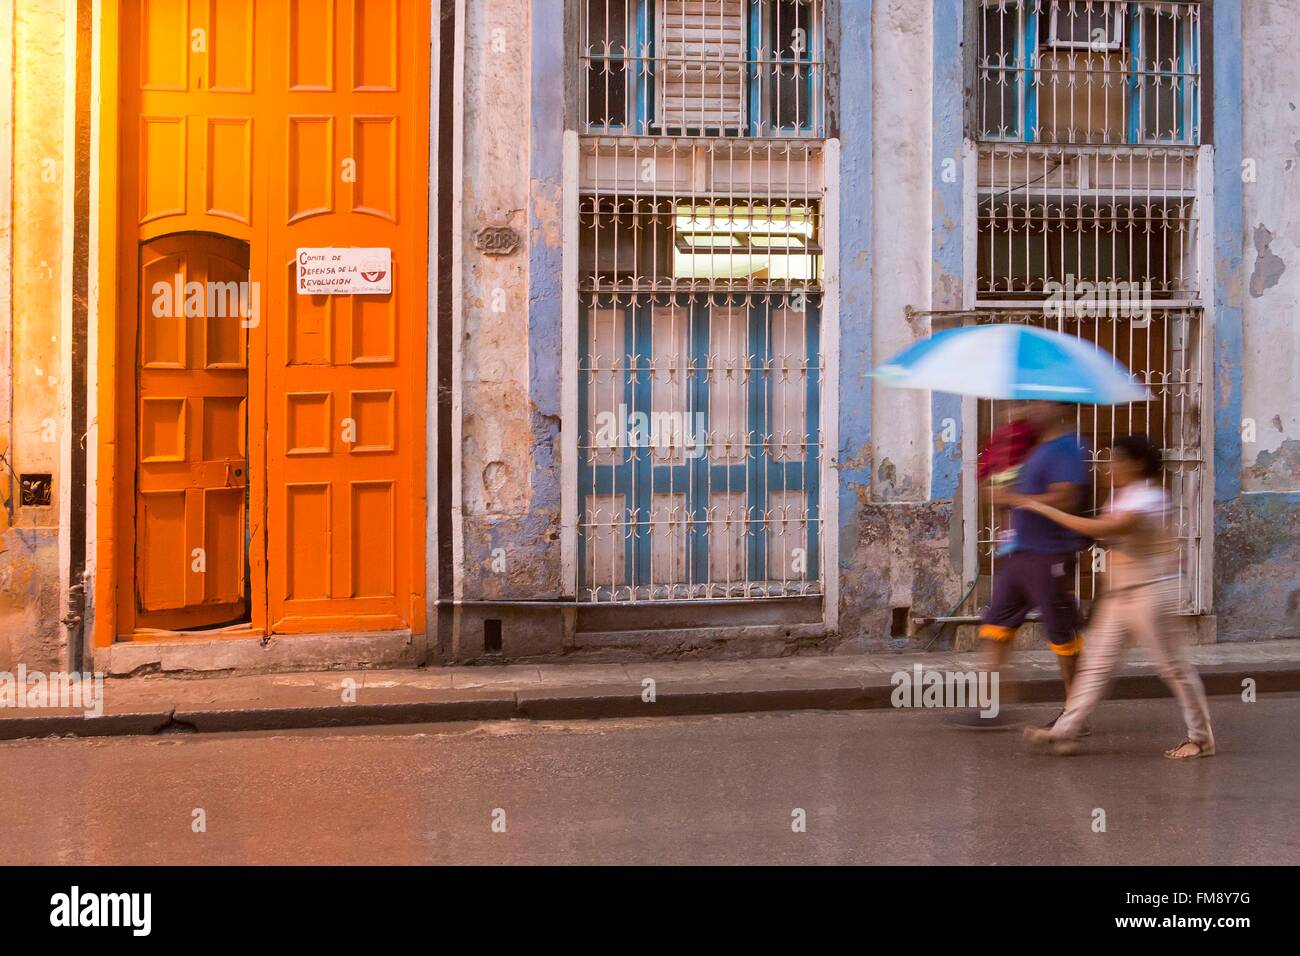 Cuba, Ciudad de la Habana Province, La Havana, La Habana Vieja district elencati come patrimonio mondiale dall' UNESCO, persone che passeggiano lungo una porta dipinta da artista francese Daniel Buren durante il 2015 l'arte contemporanea evento biennale Foto Stock